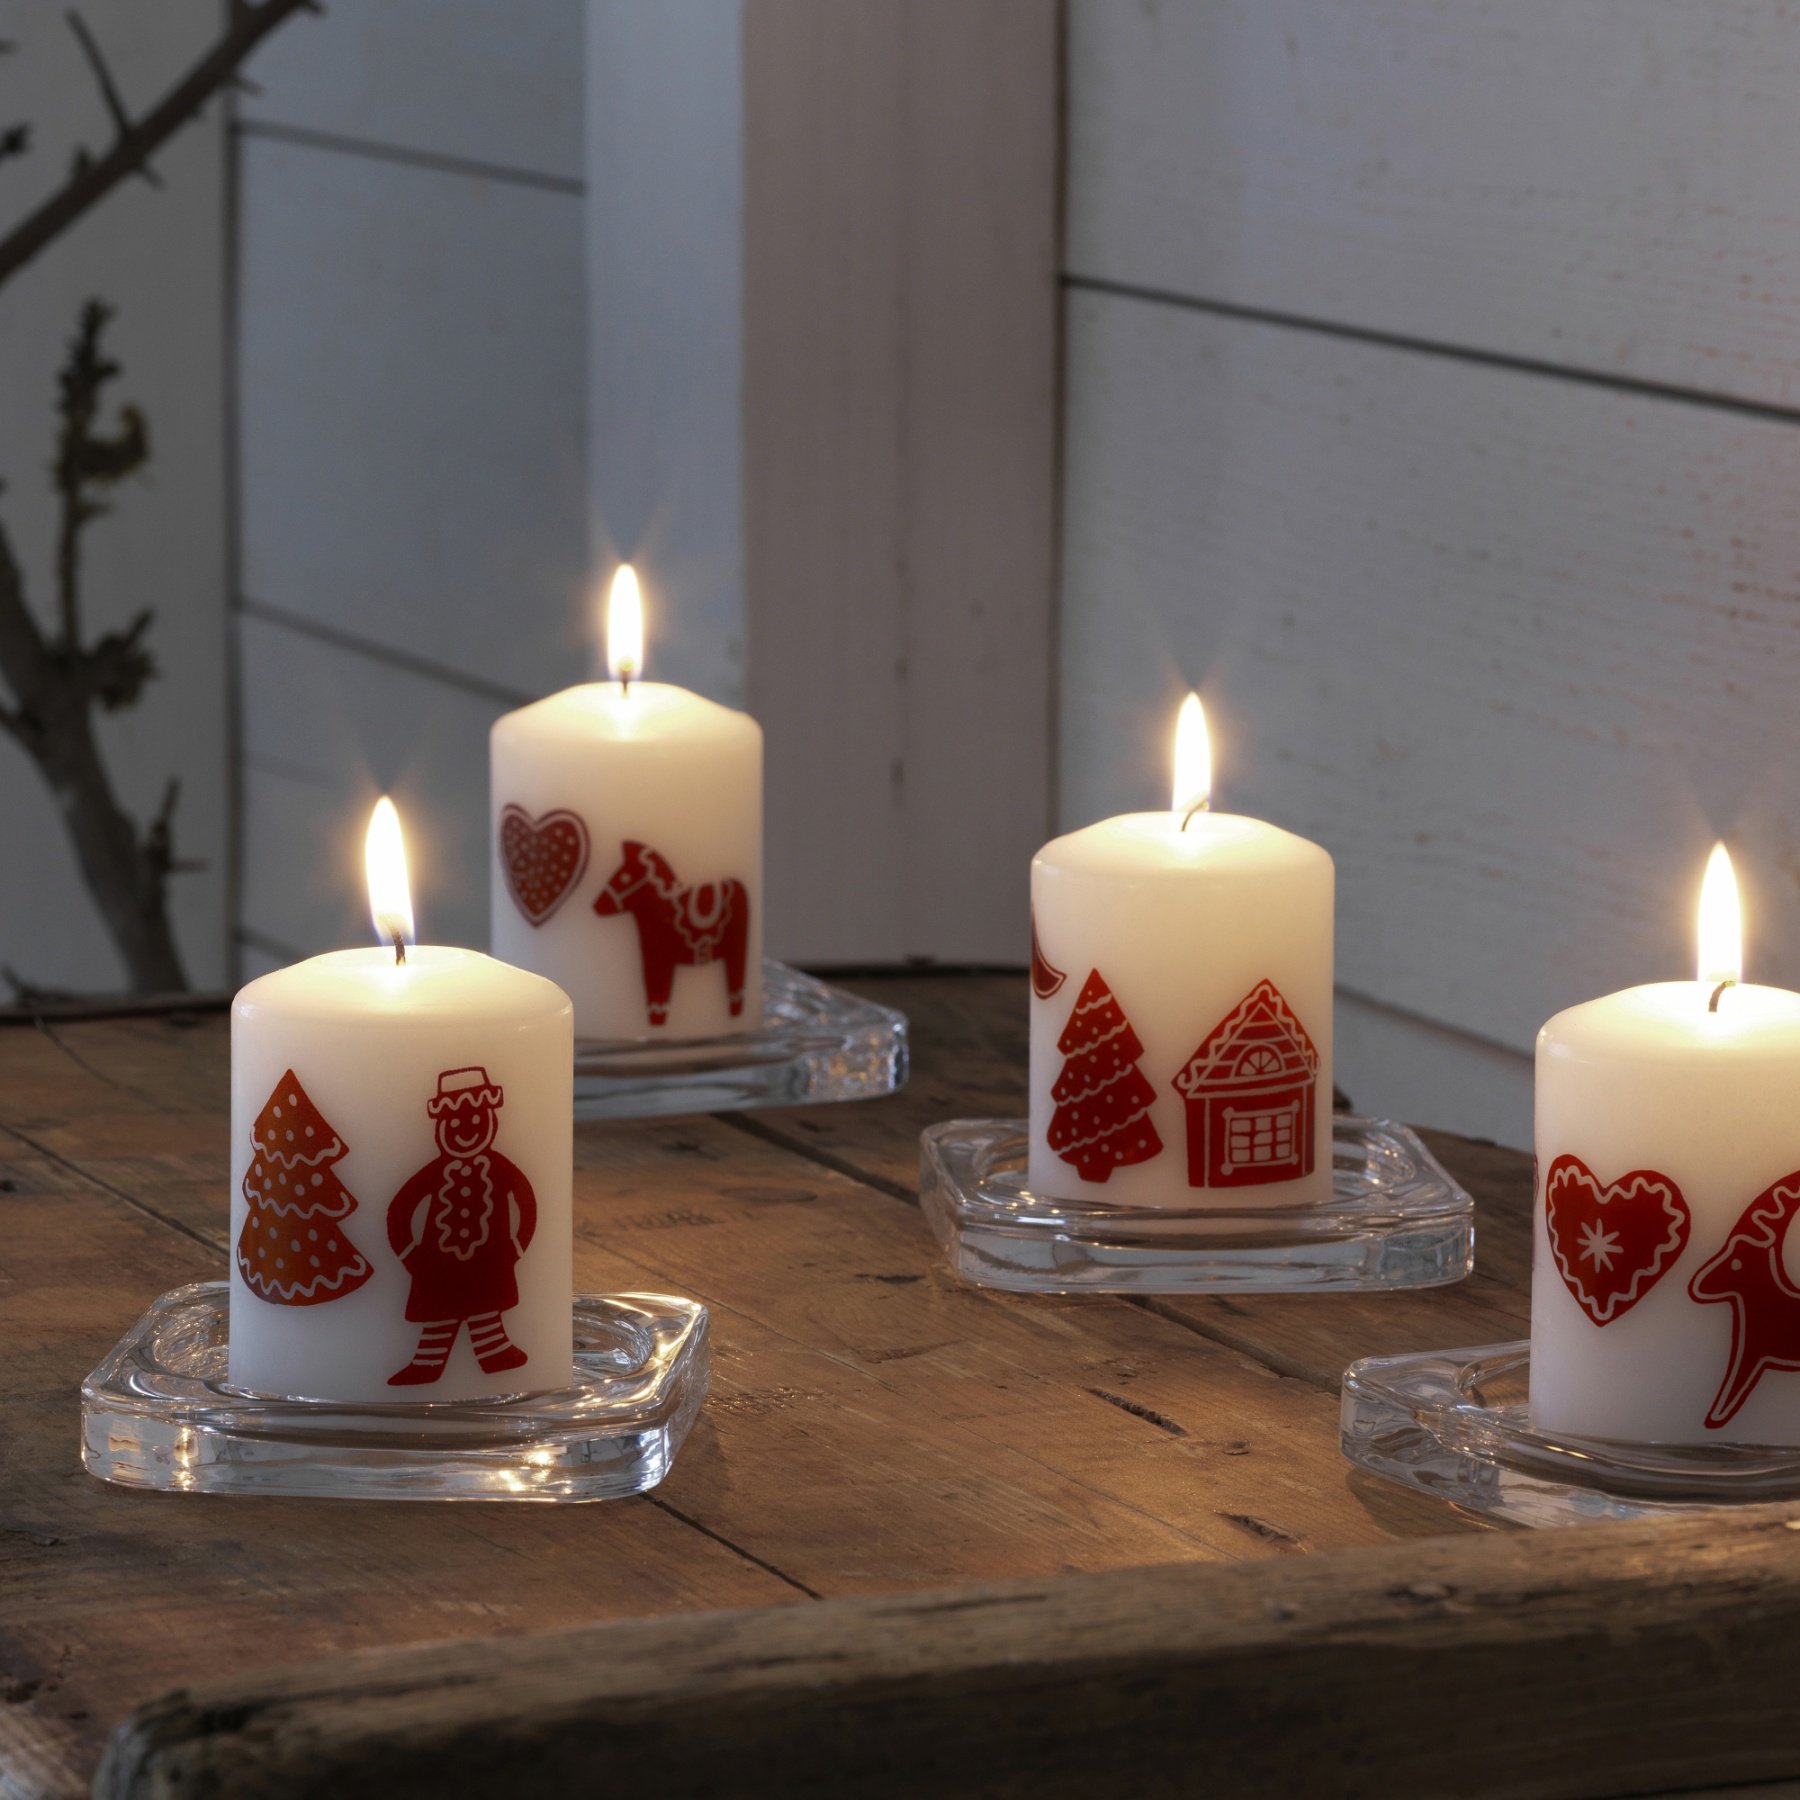 Reproduire la magie de Noël avec des bougies : 12 idées inspirantes